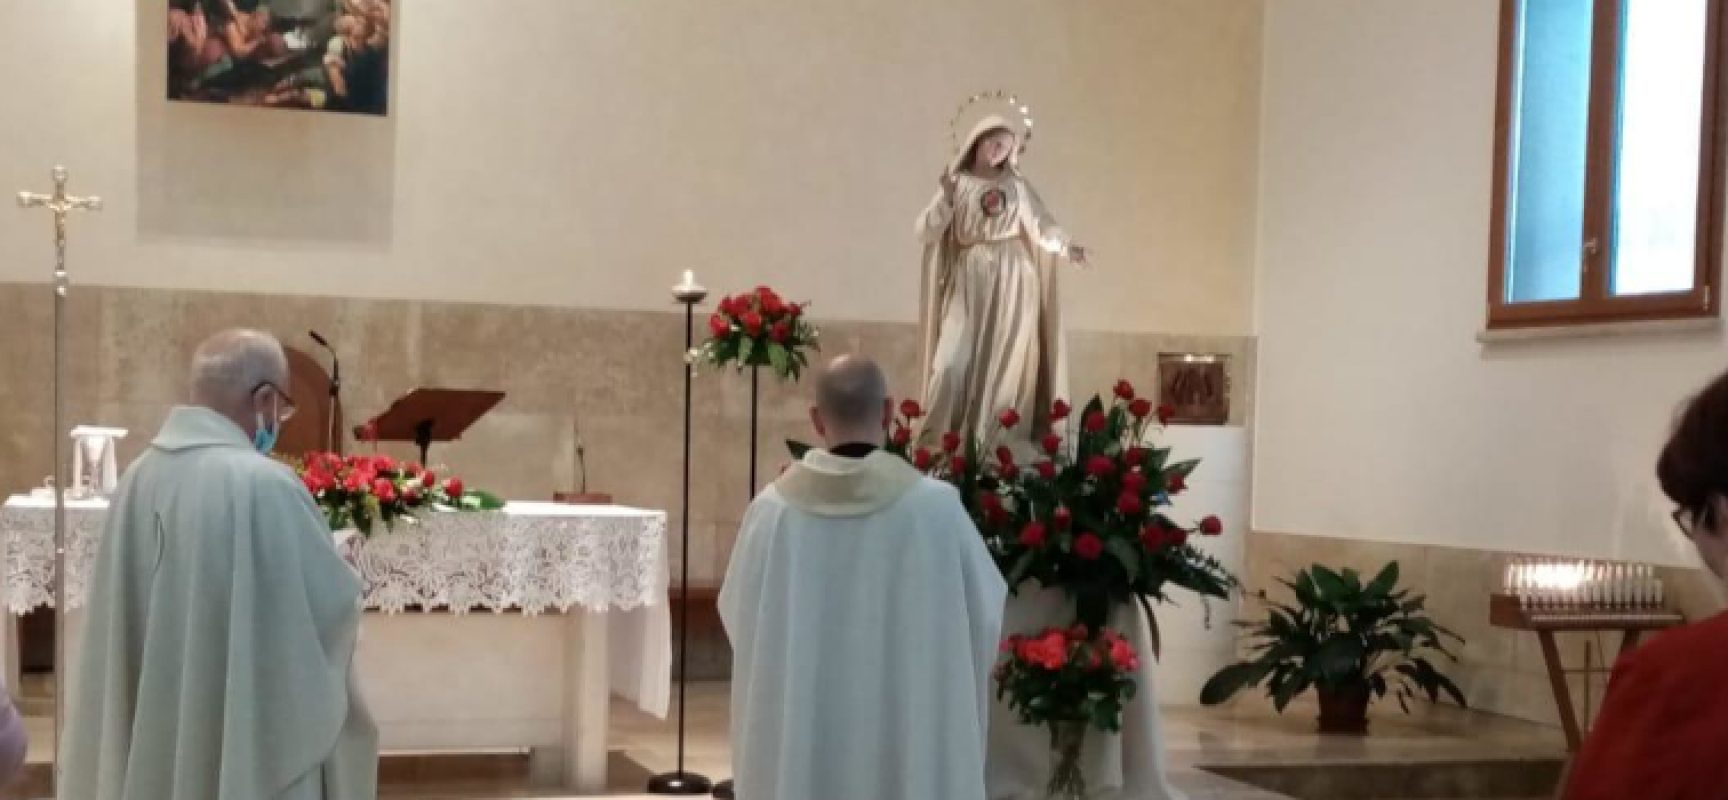 Fiaccolata in onore della Madonna di Fatima, don Gaetano: “Nel suo volto la consolazione”